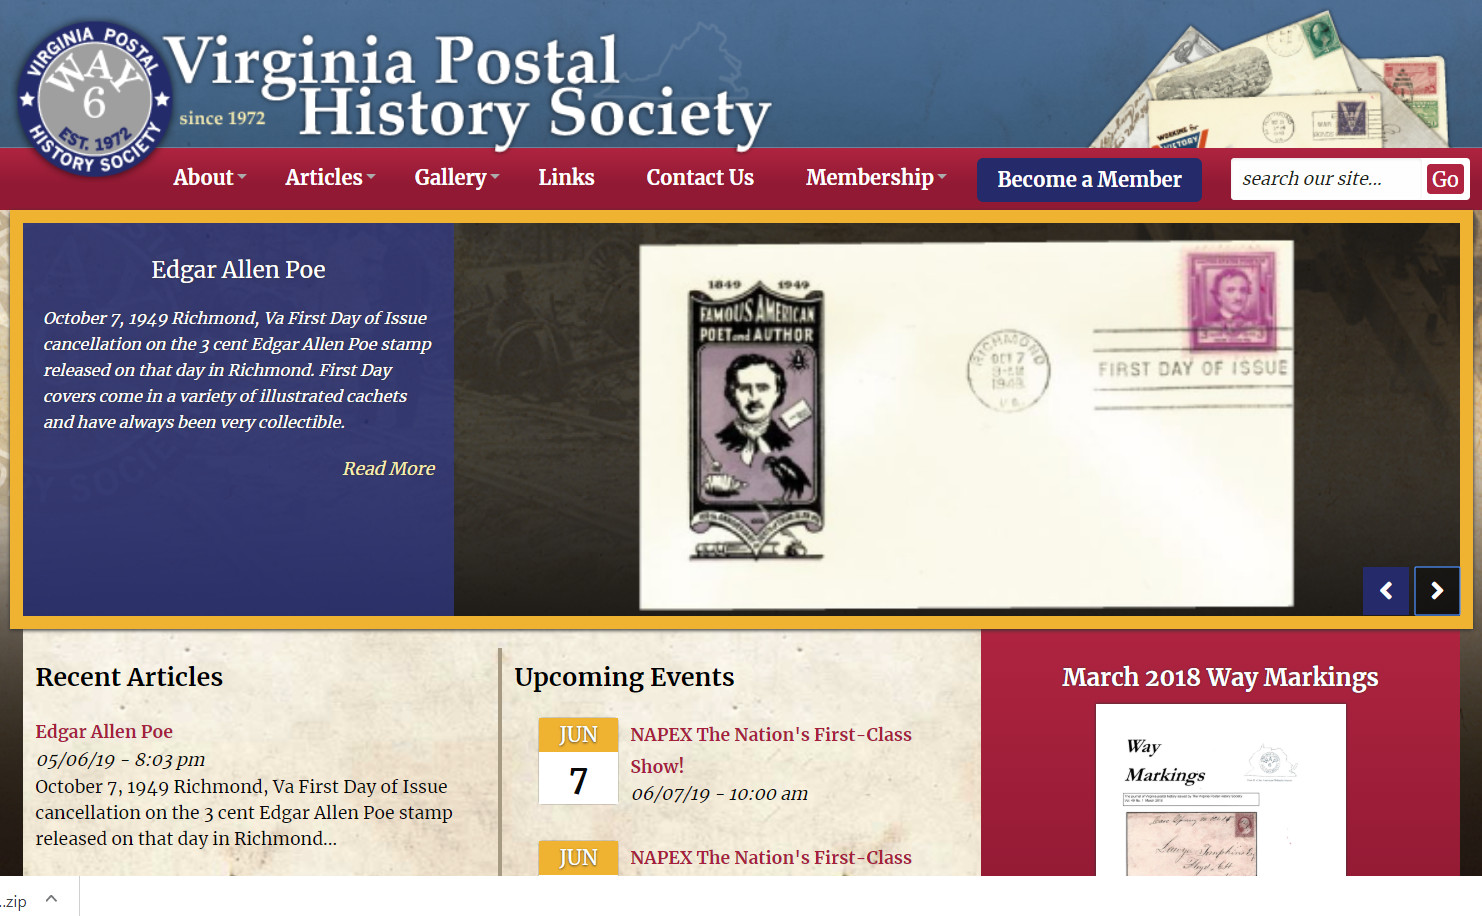 The Virginia Postal History Society has a new website!